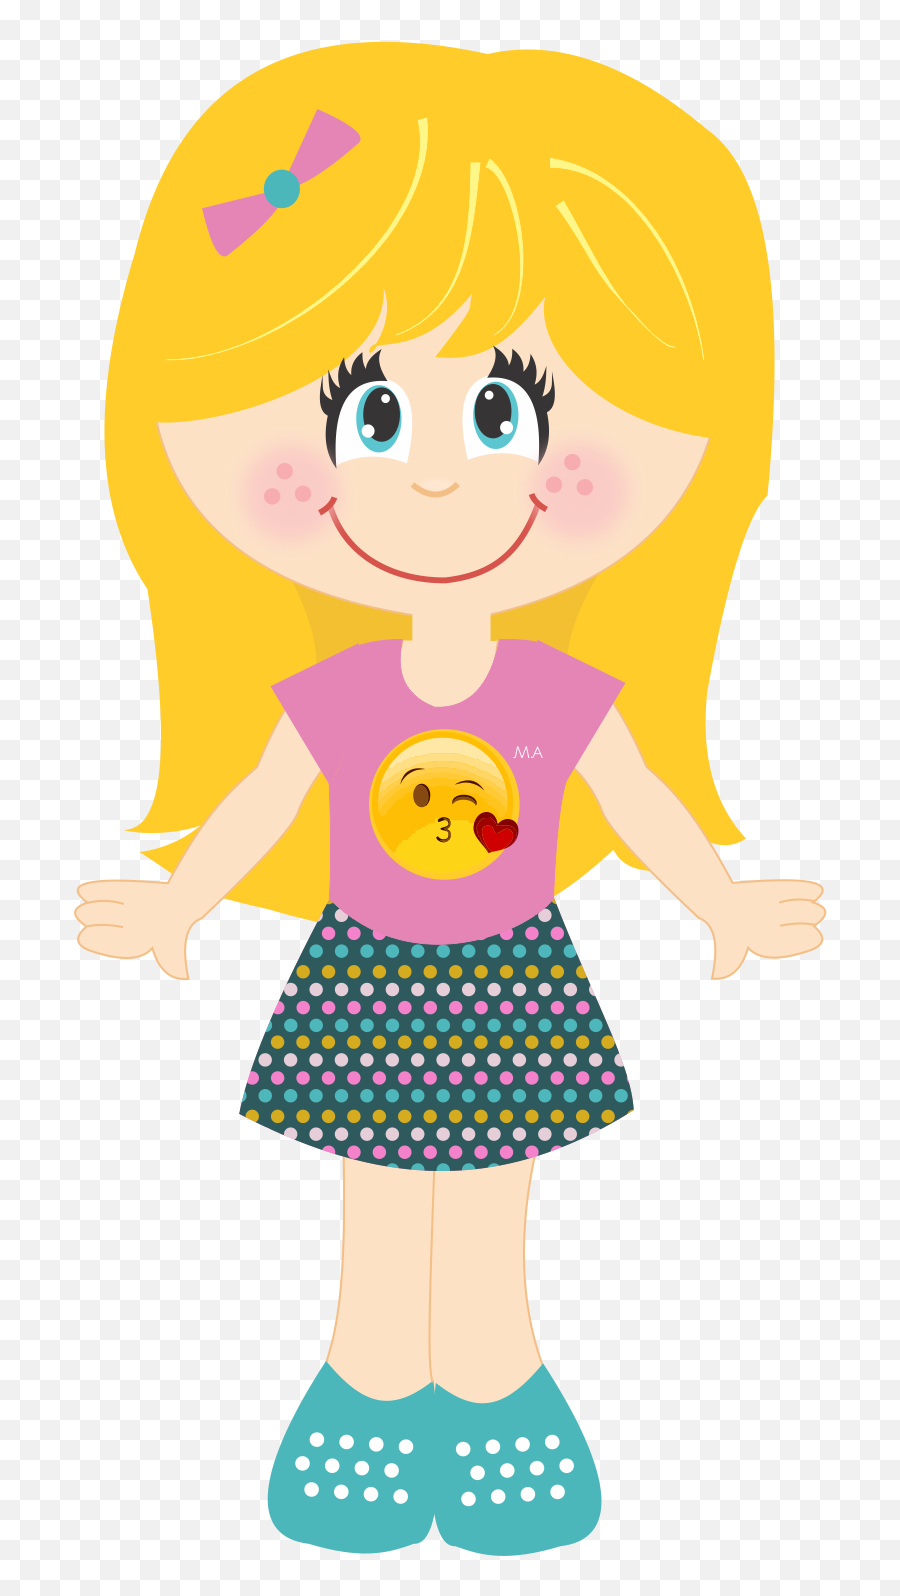 Meninas Bonecas - Desenhos De Meninas Bonecas Emoji,Maria Chiquinha Emoticon Whatsapp